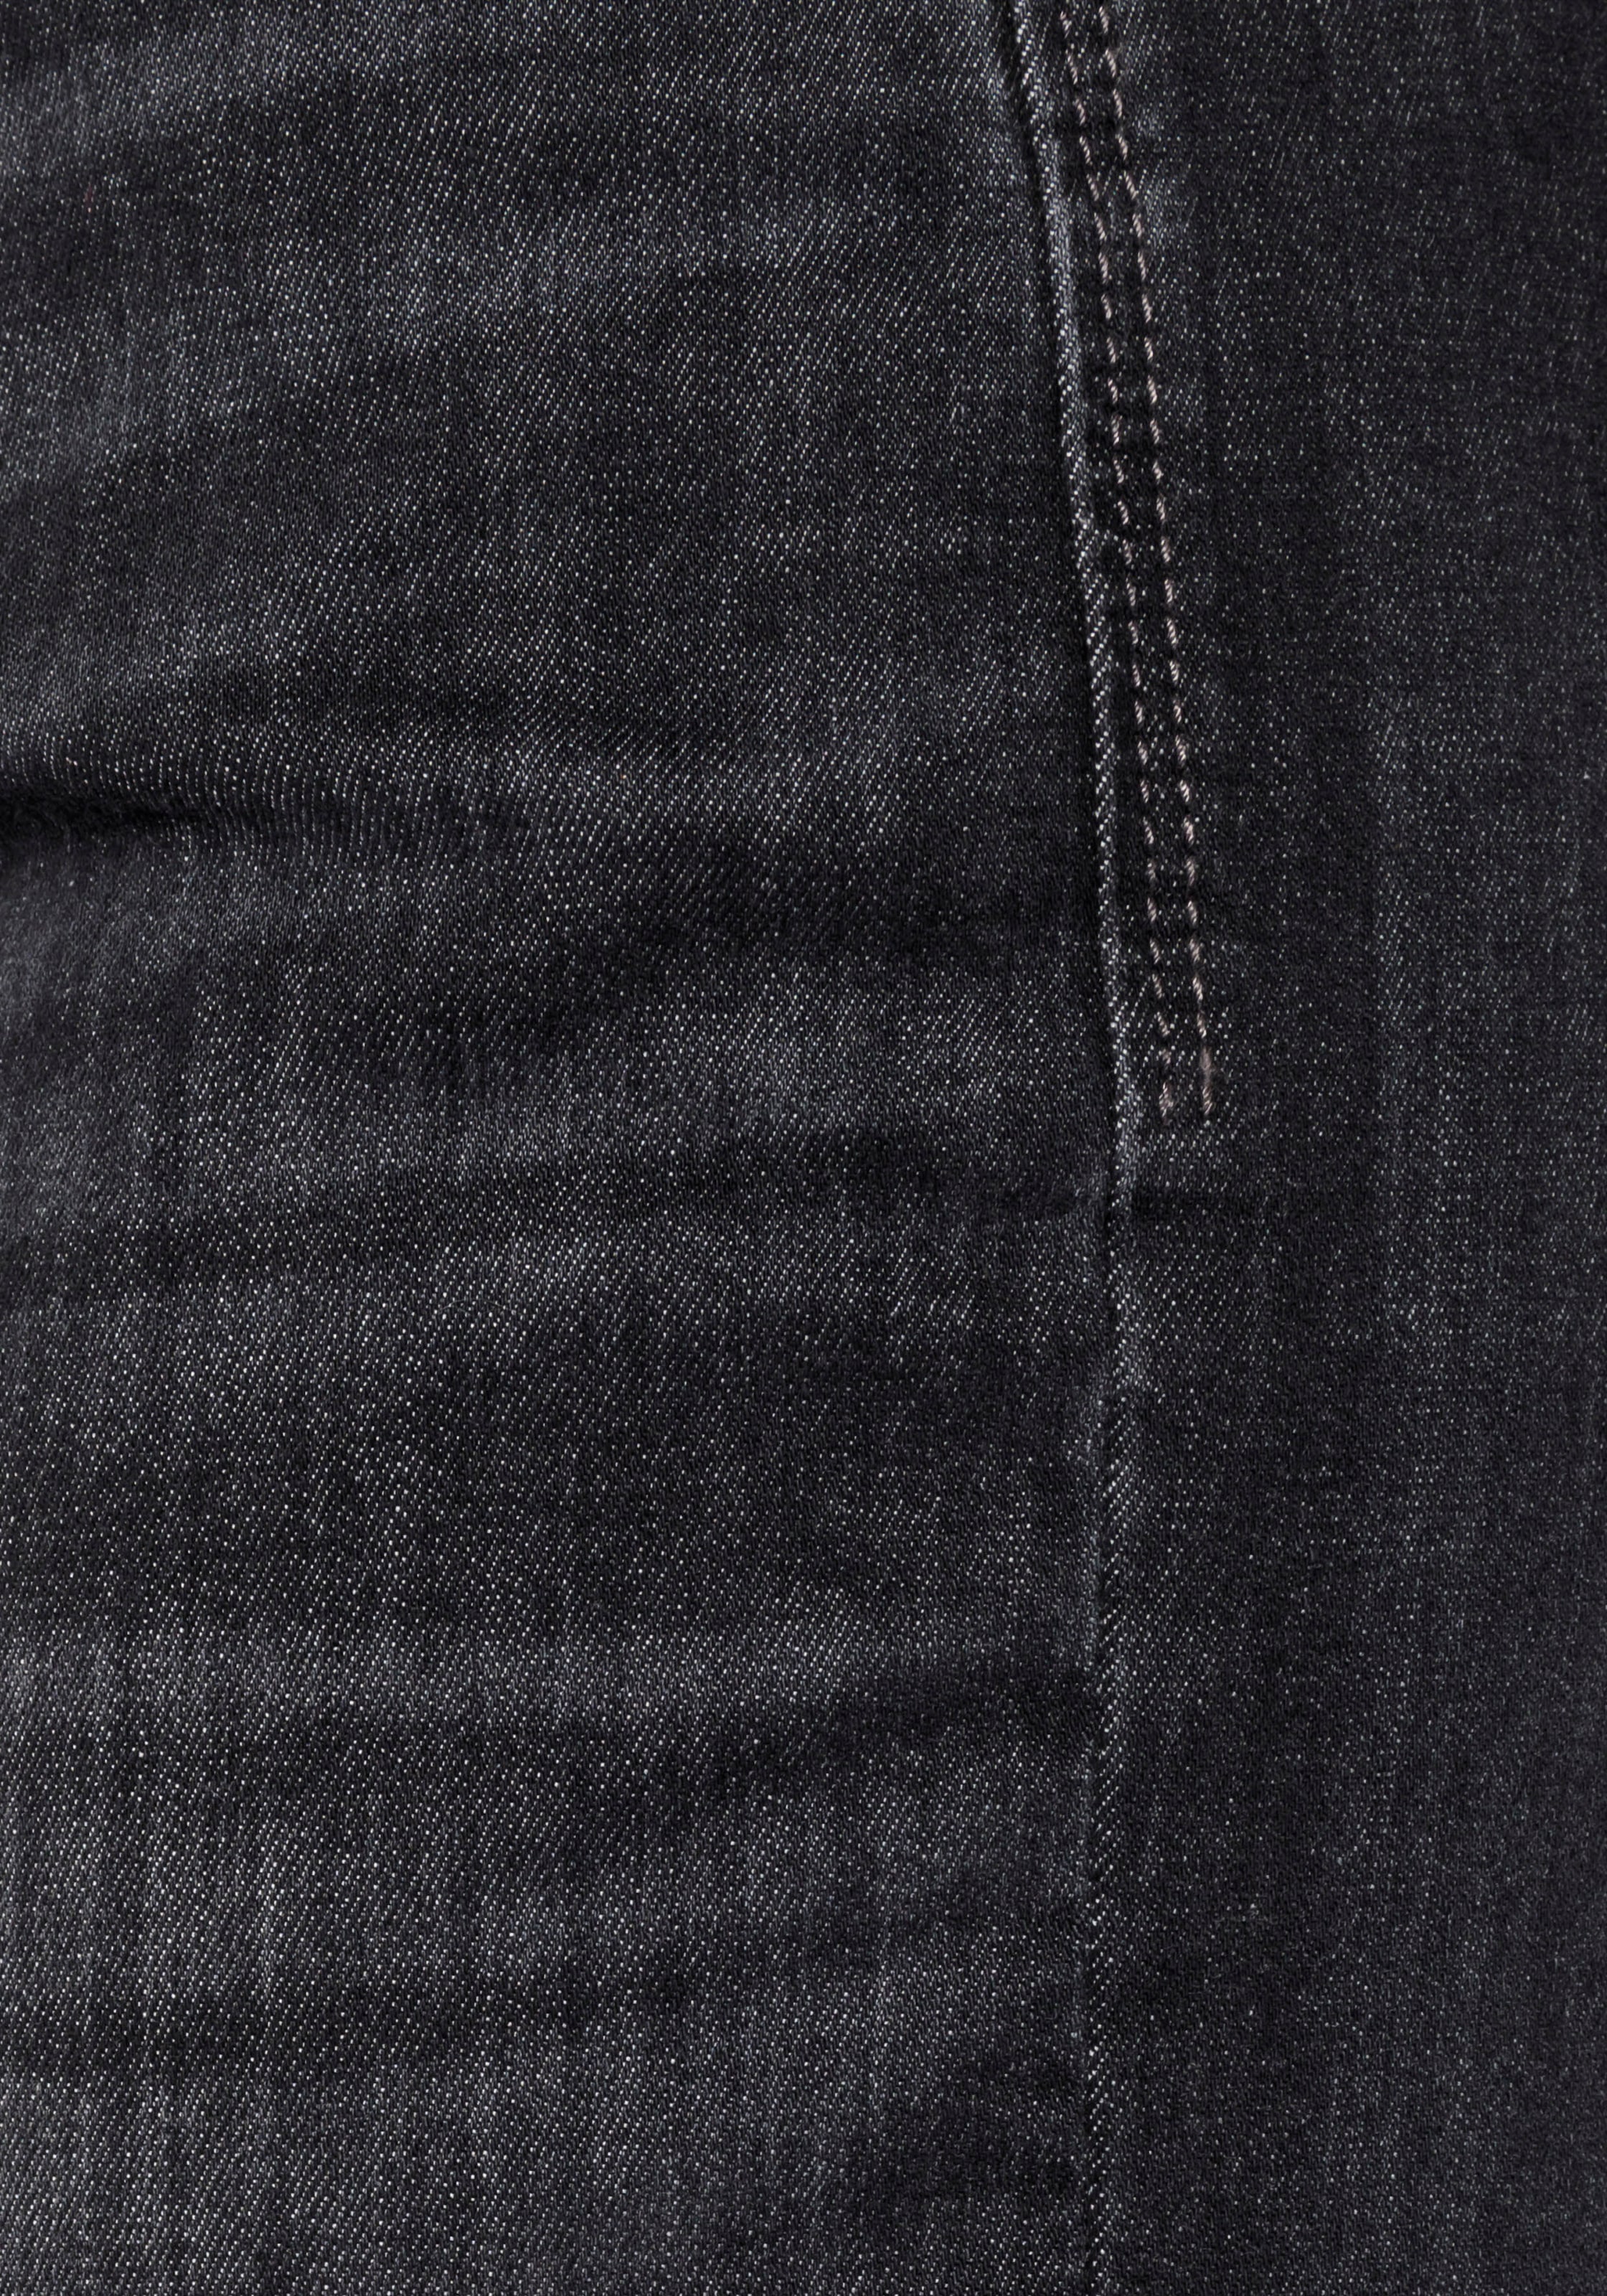 Jelmoli-Versand MAC Weite online kaufen Schweiz »WIDE« bei Jeans